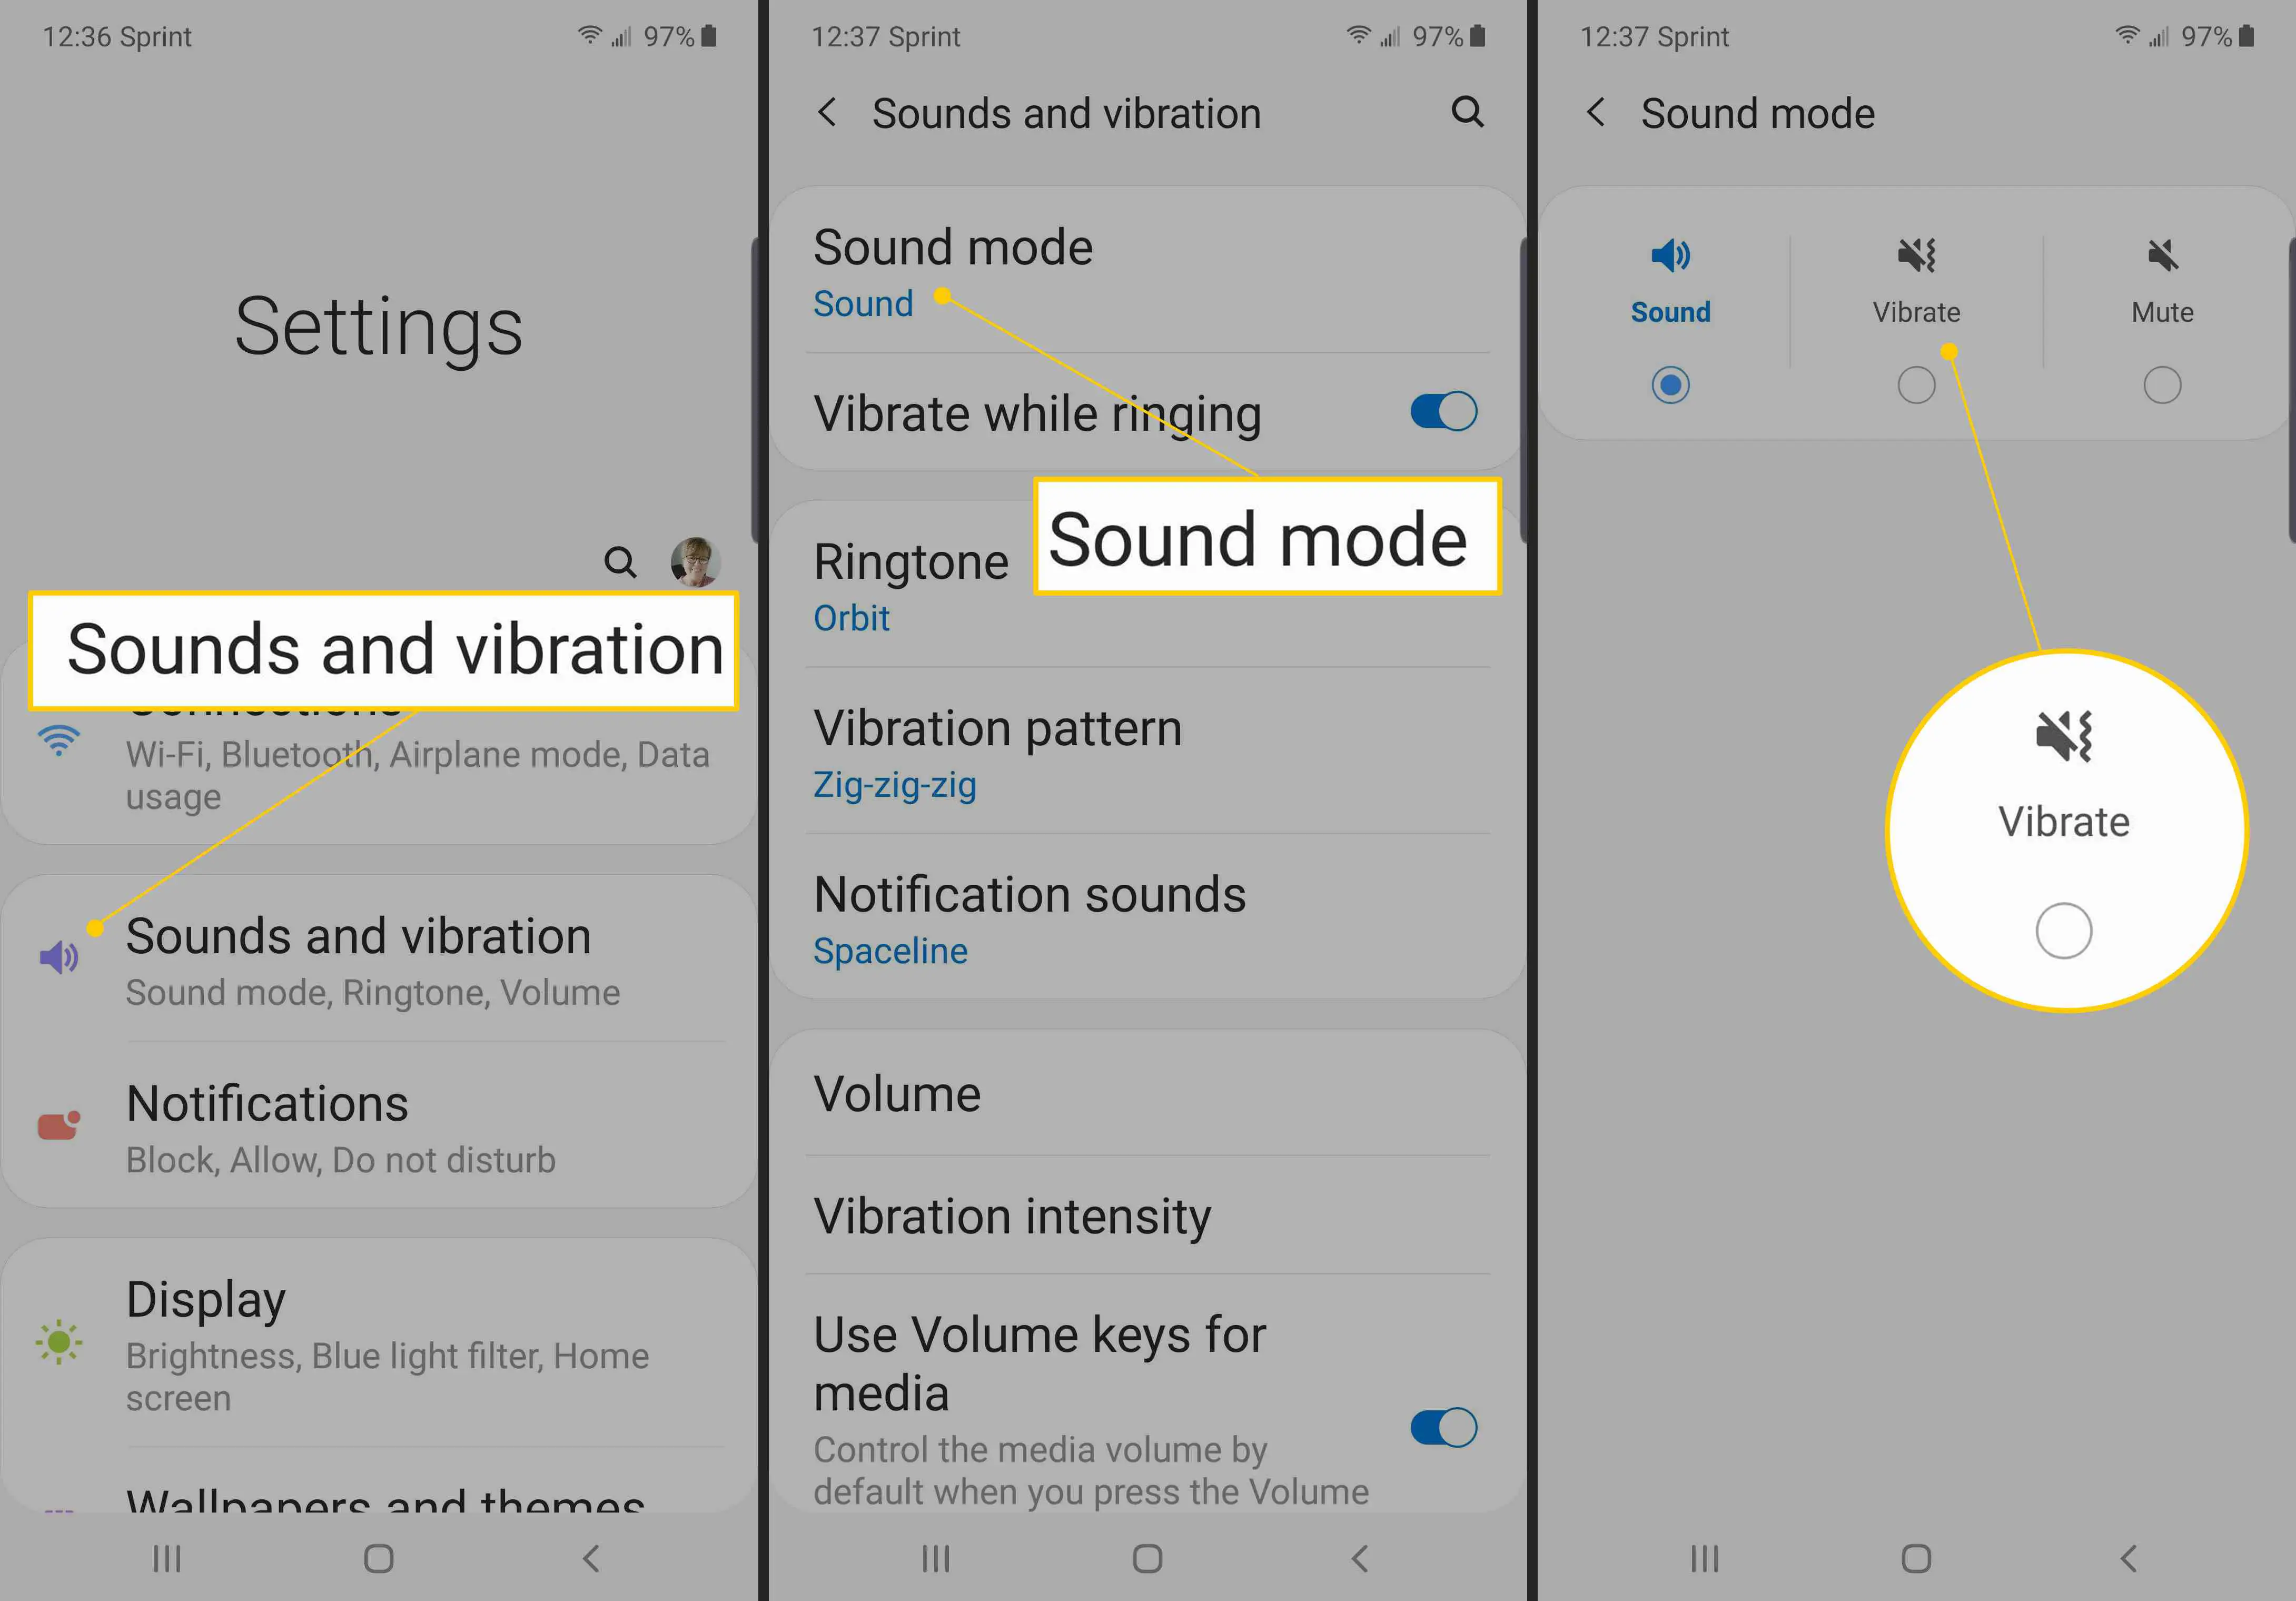 Sons e vibração, modo de som, caixa de seleção Vibrar no Android